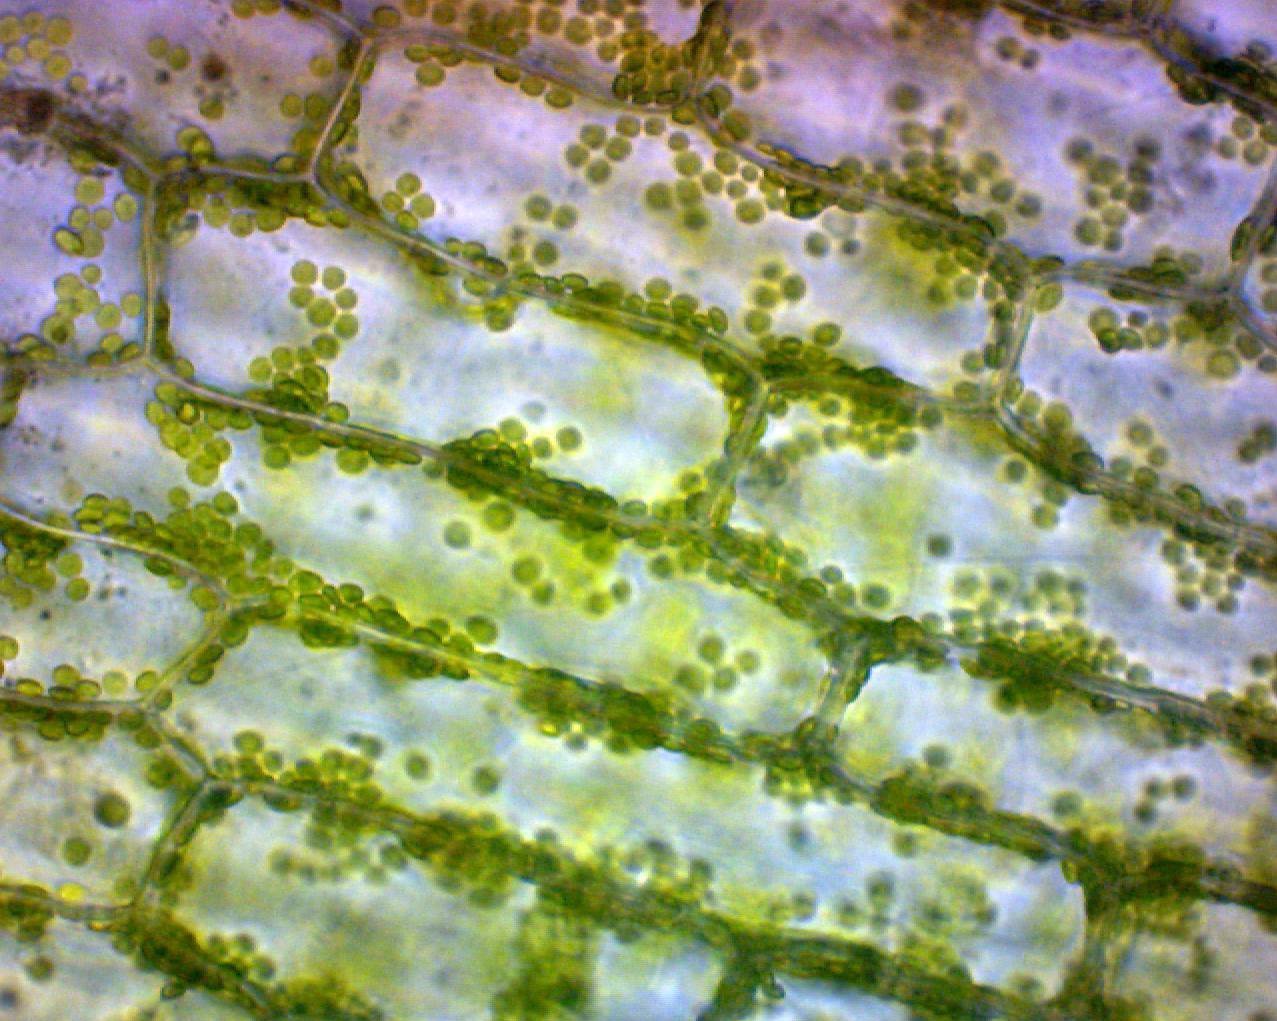 Особенности внутреннего строения элодеи. Хлоропласты элодеи. Хлоропласты в листе элодеи. Клетки листа элодеи под микроскопом. Клетка элодеи канадской.